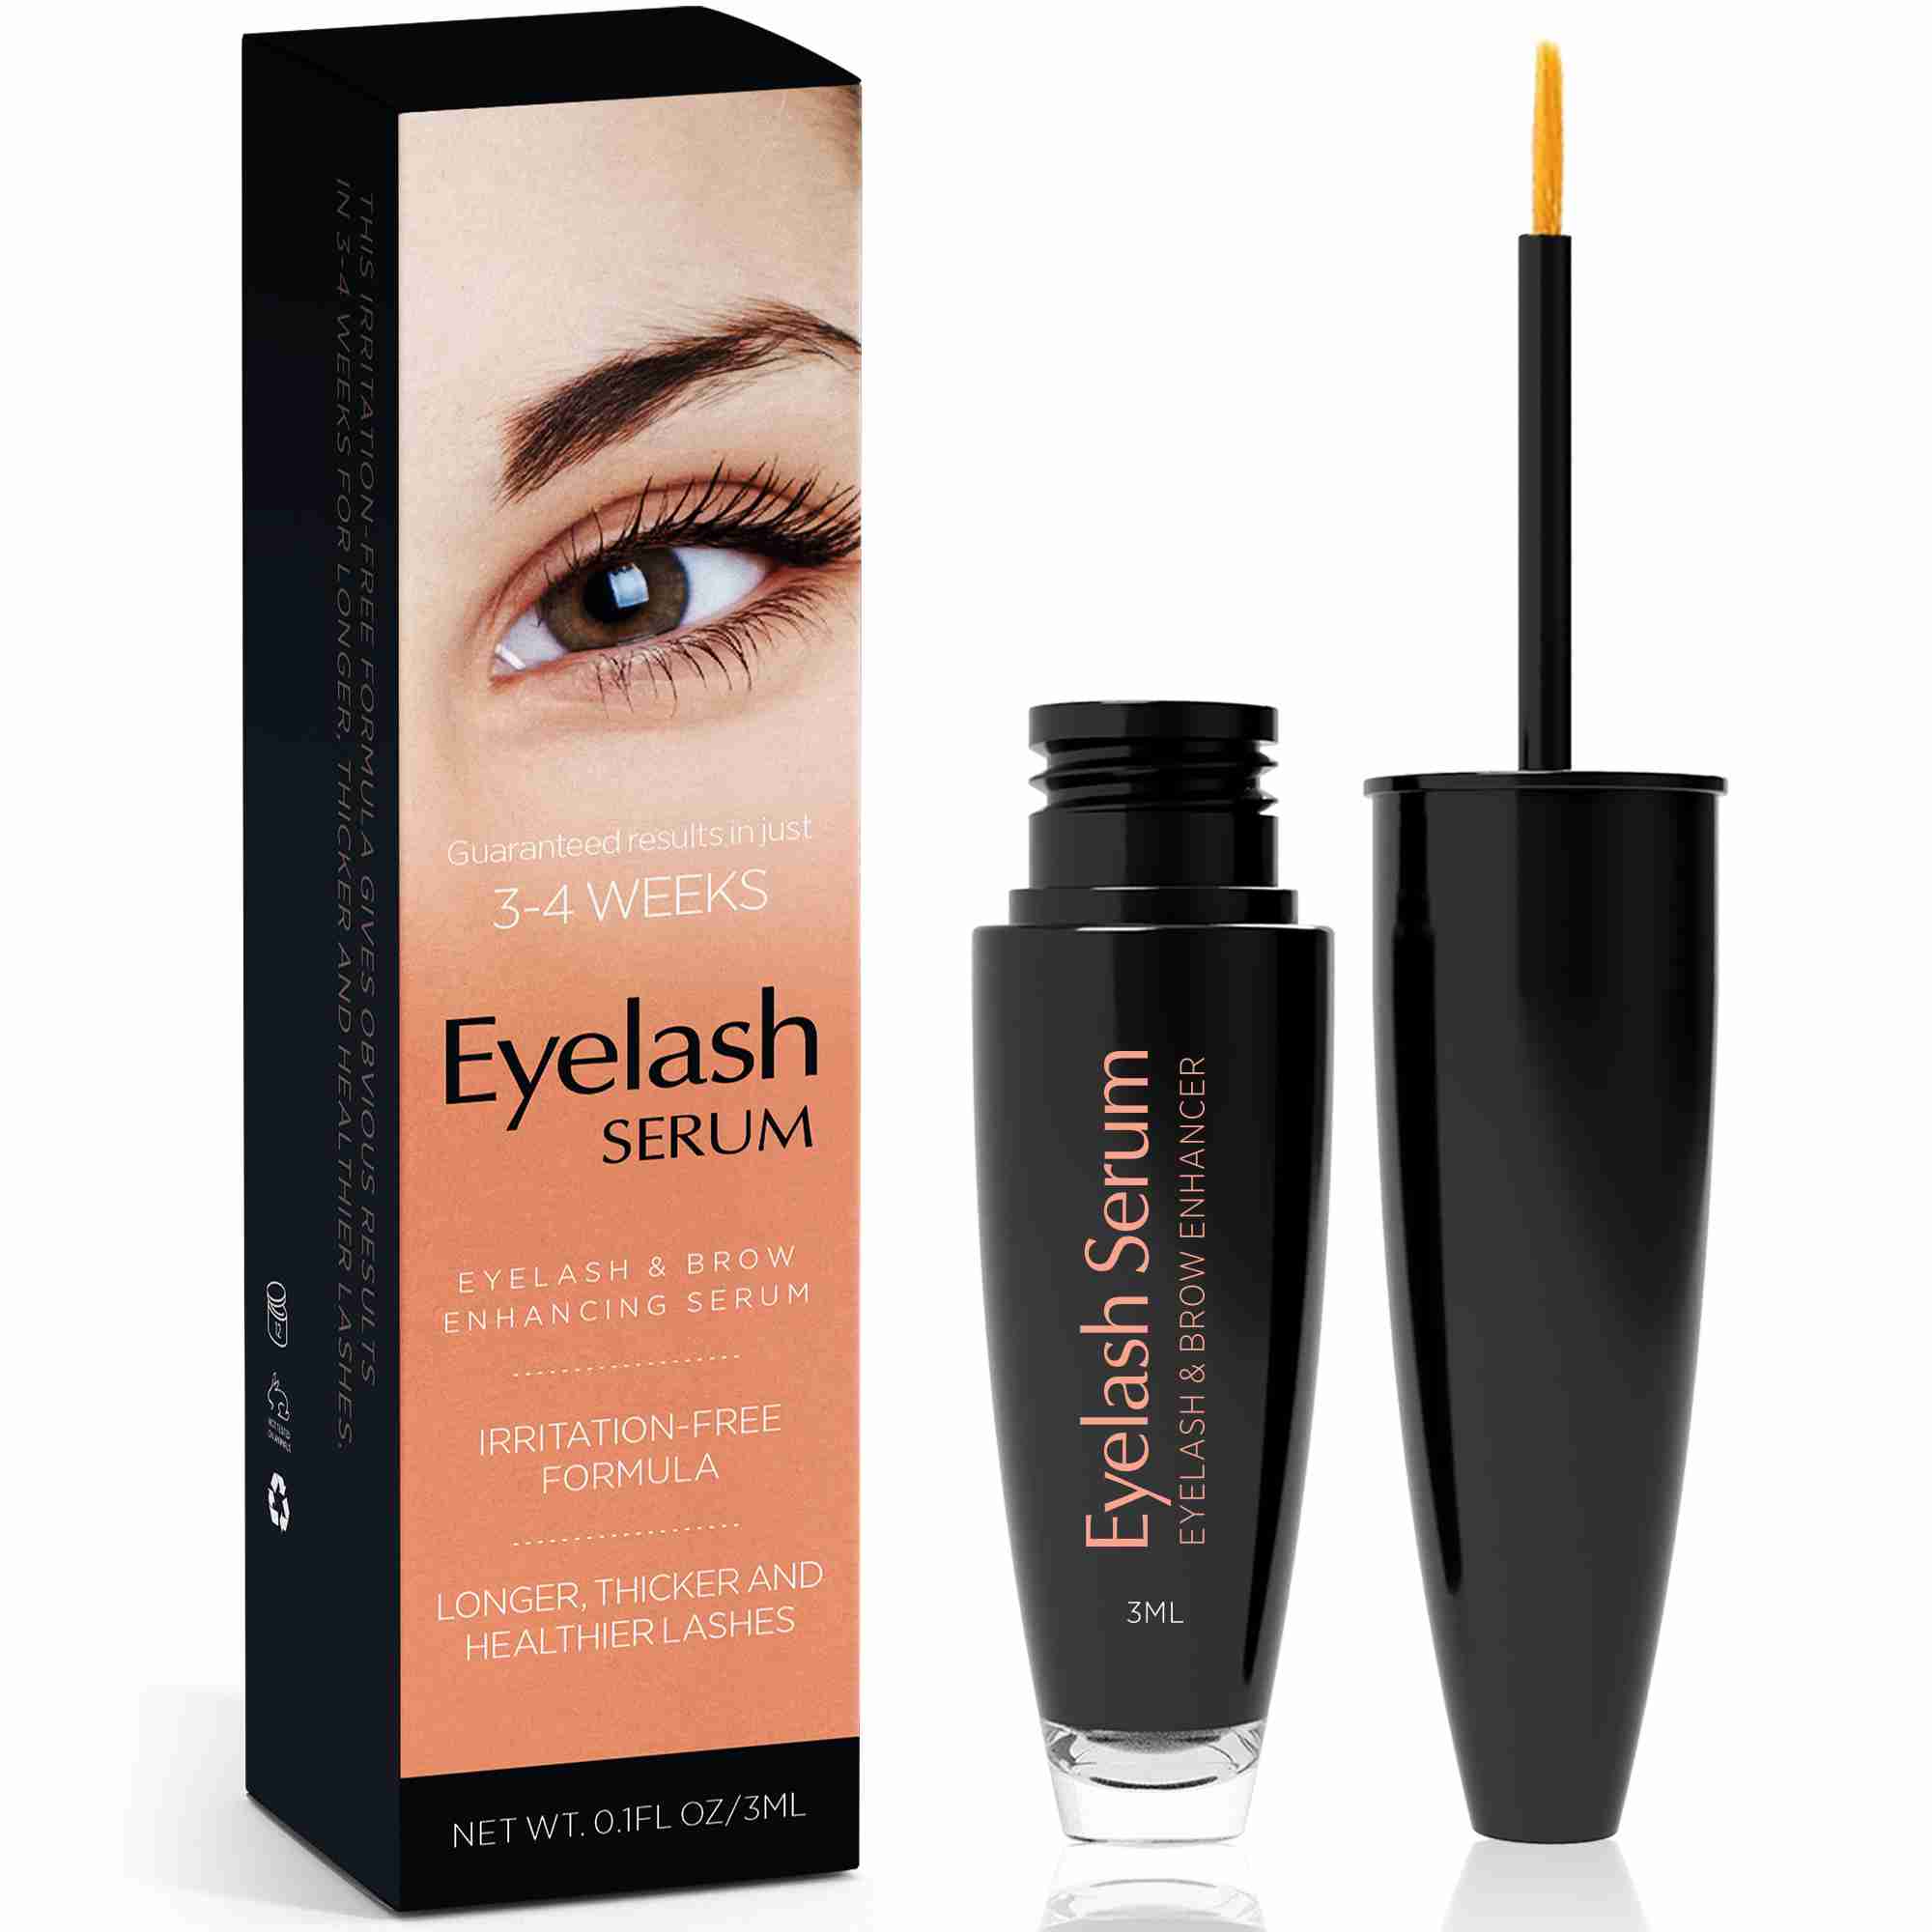 eyelash-growth-serum with cash back rebate